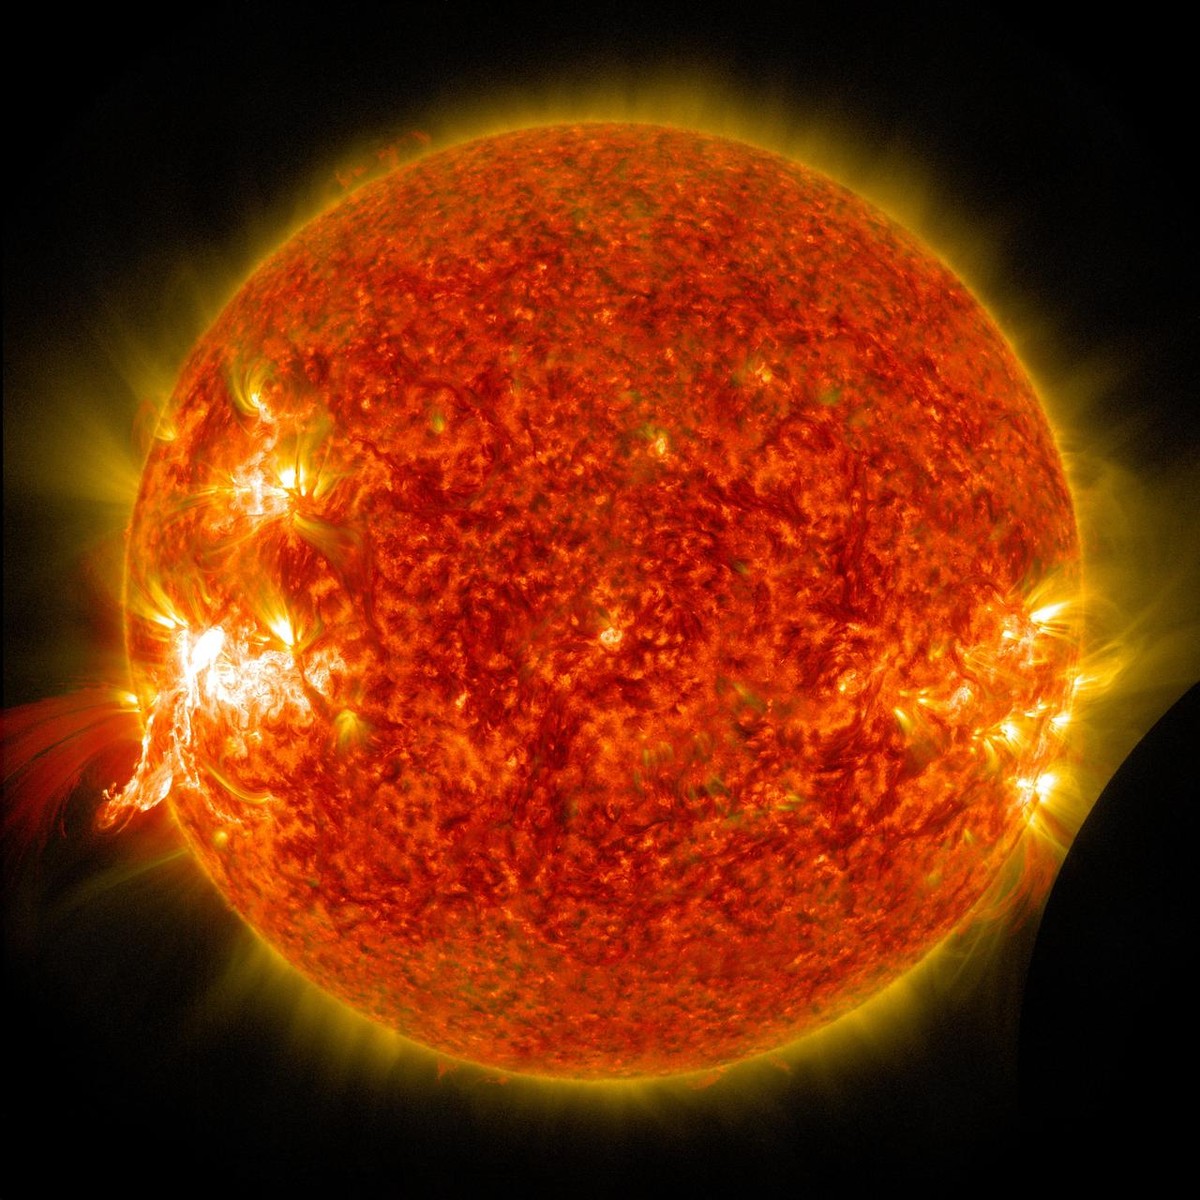 Mancha solar explota y provoca apagón de radio de onda corta en Sudamérica |  Ciencia y Salud